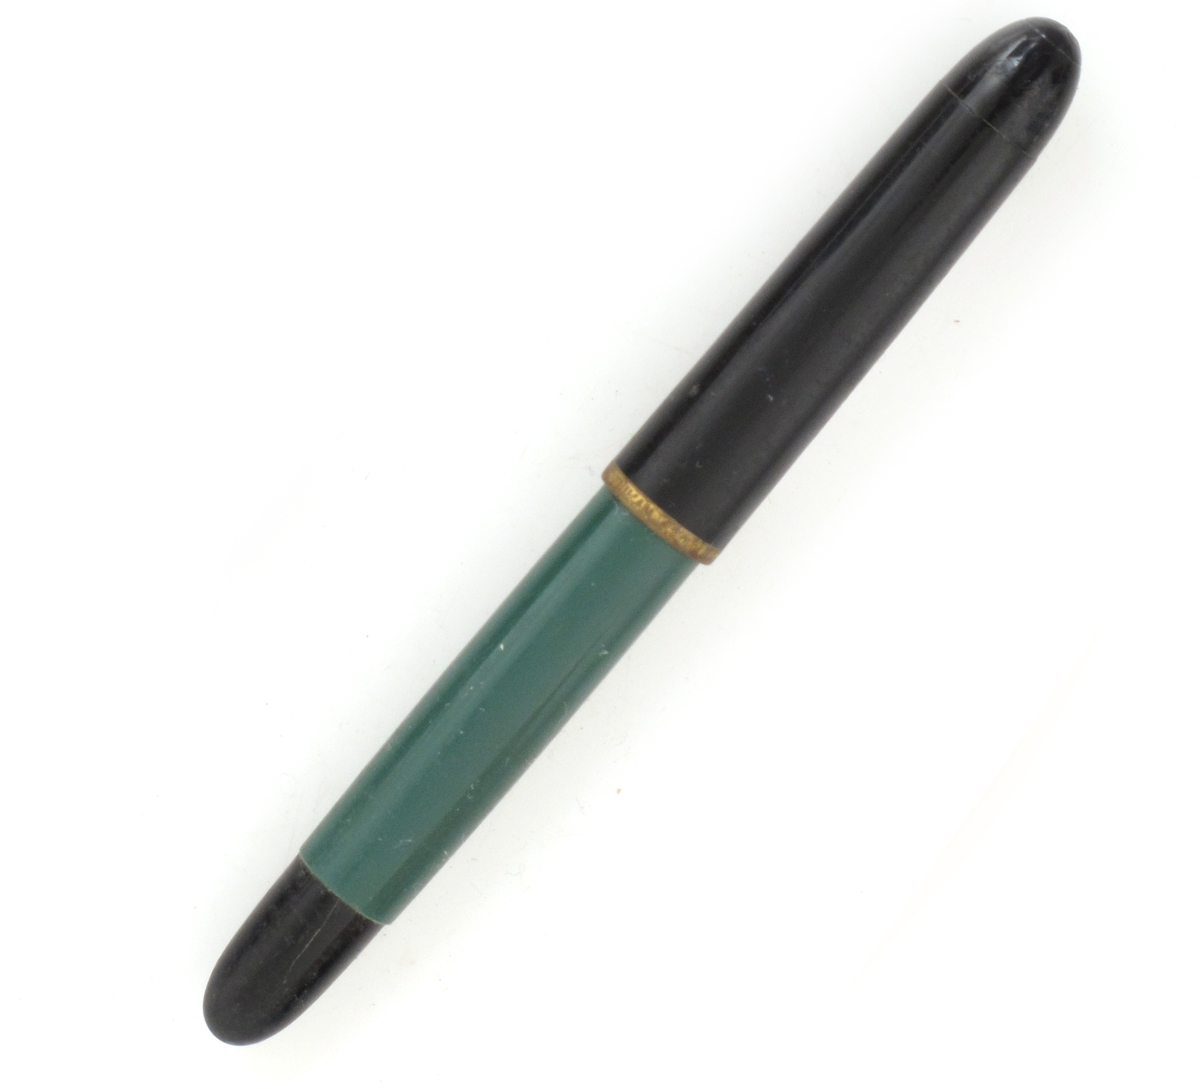 Fyllepenn i grønn og sort plast.